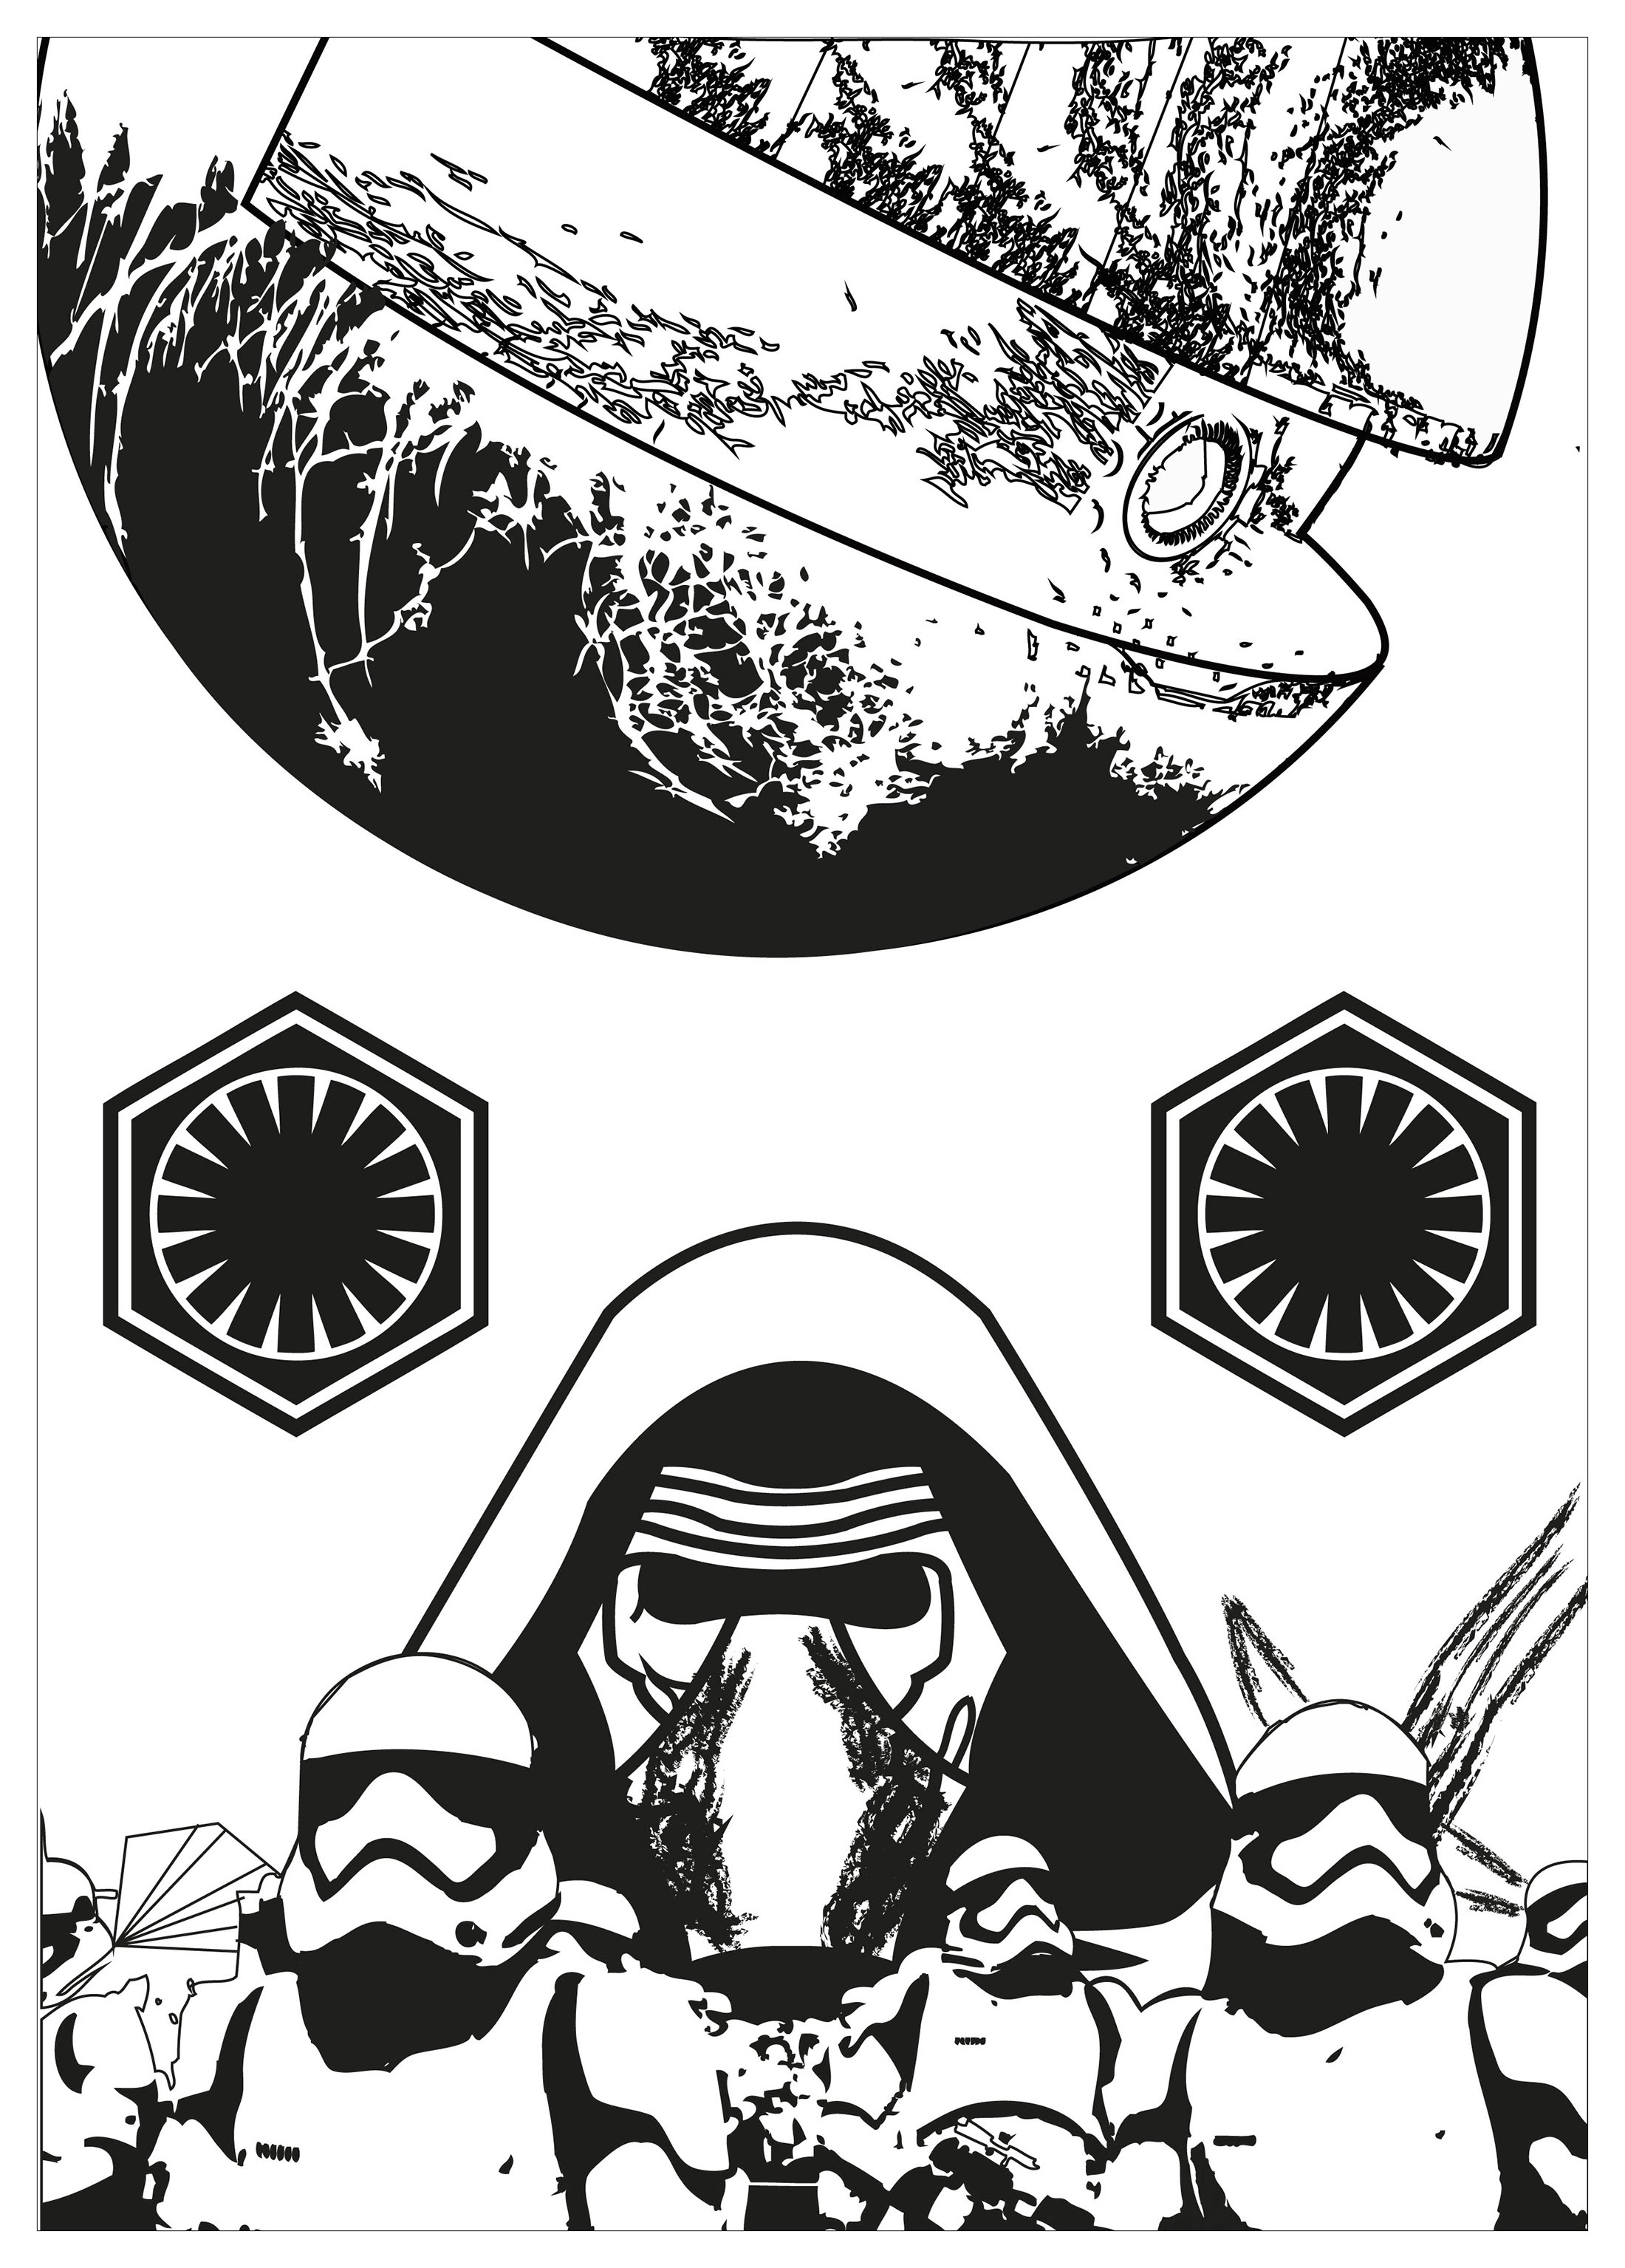 Un coloriage inspiré de Star Wars, avec L'Etoile noire, des Stormtroopers et le maléfique Kylo Ren